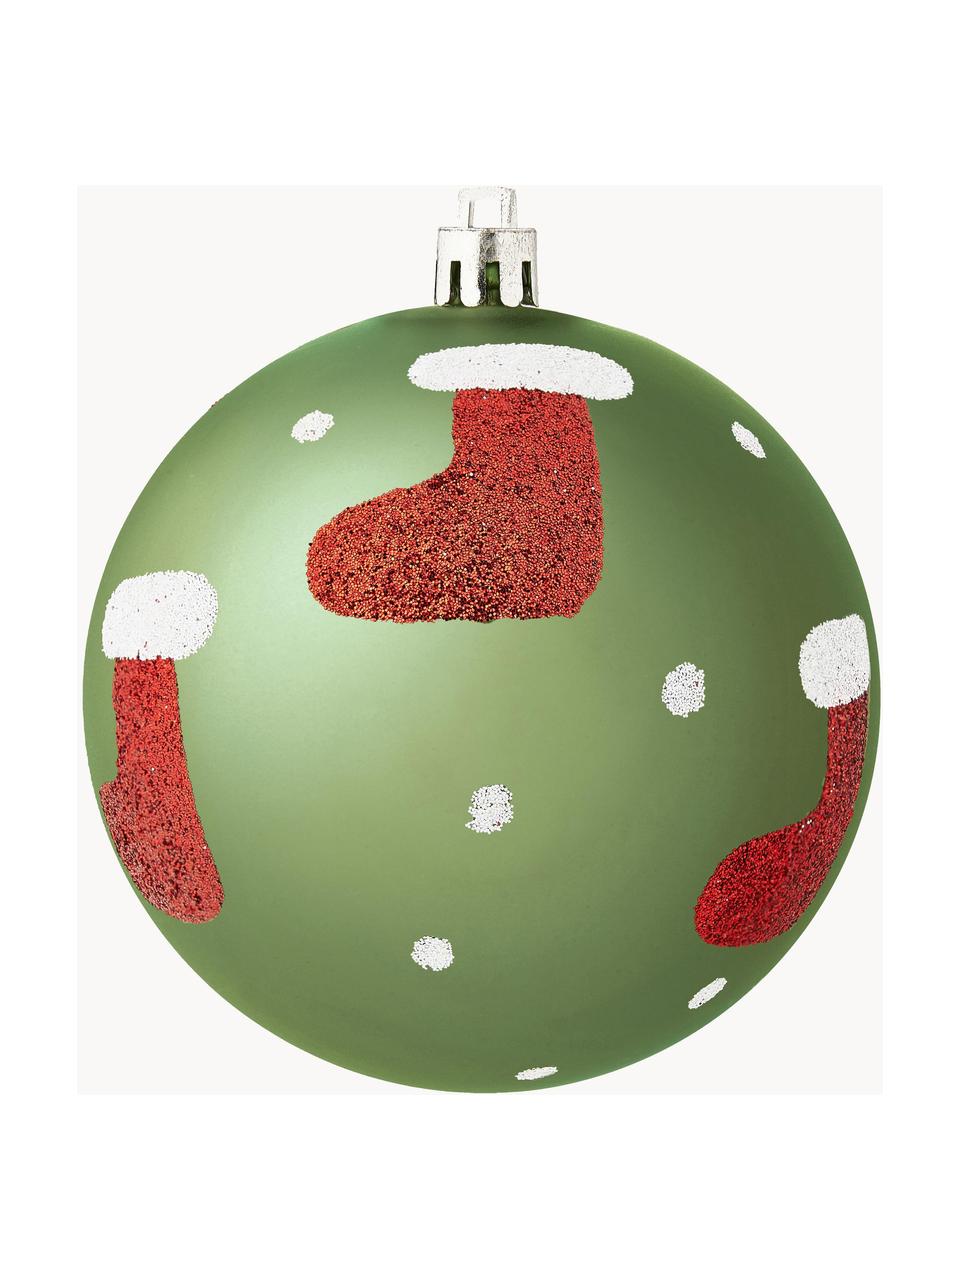 Bruchfeste Weihnachtskugeln Socky, 12 Stück, Kunststoff, Grün, Weiß, Rot, Silberfarben, Ø 8 cm